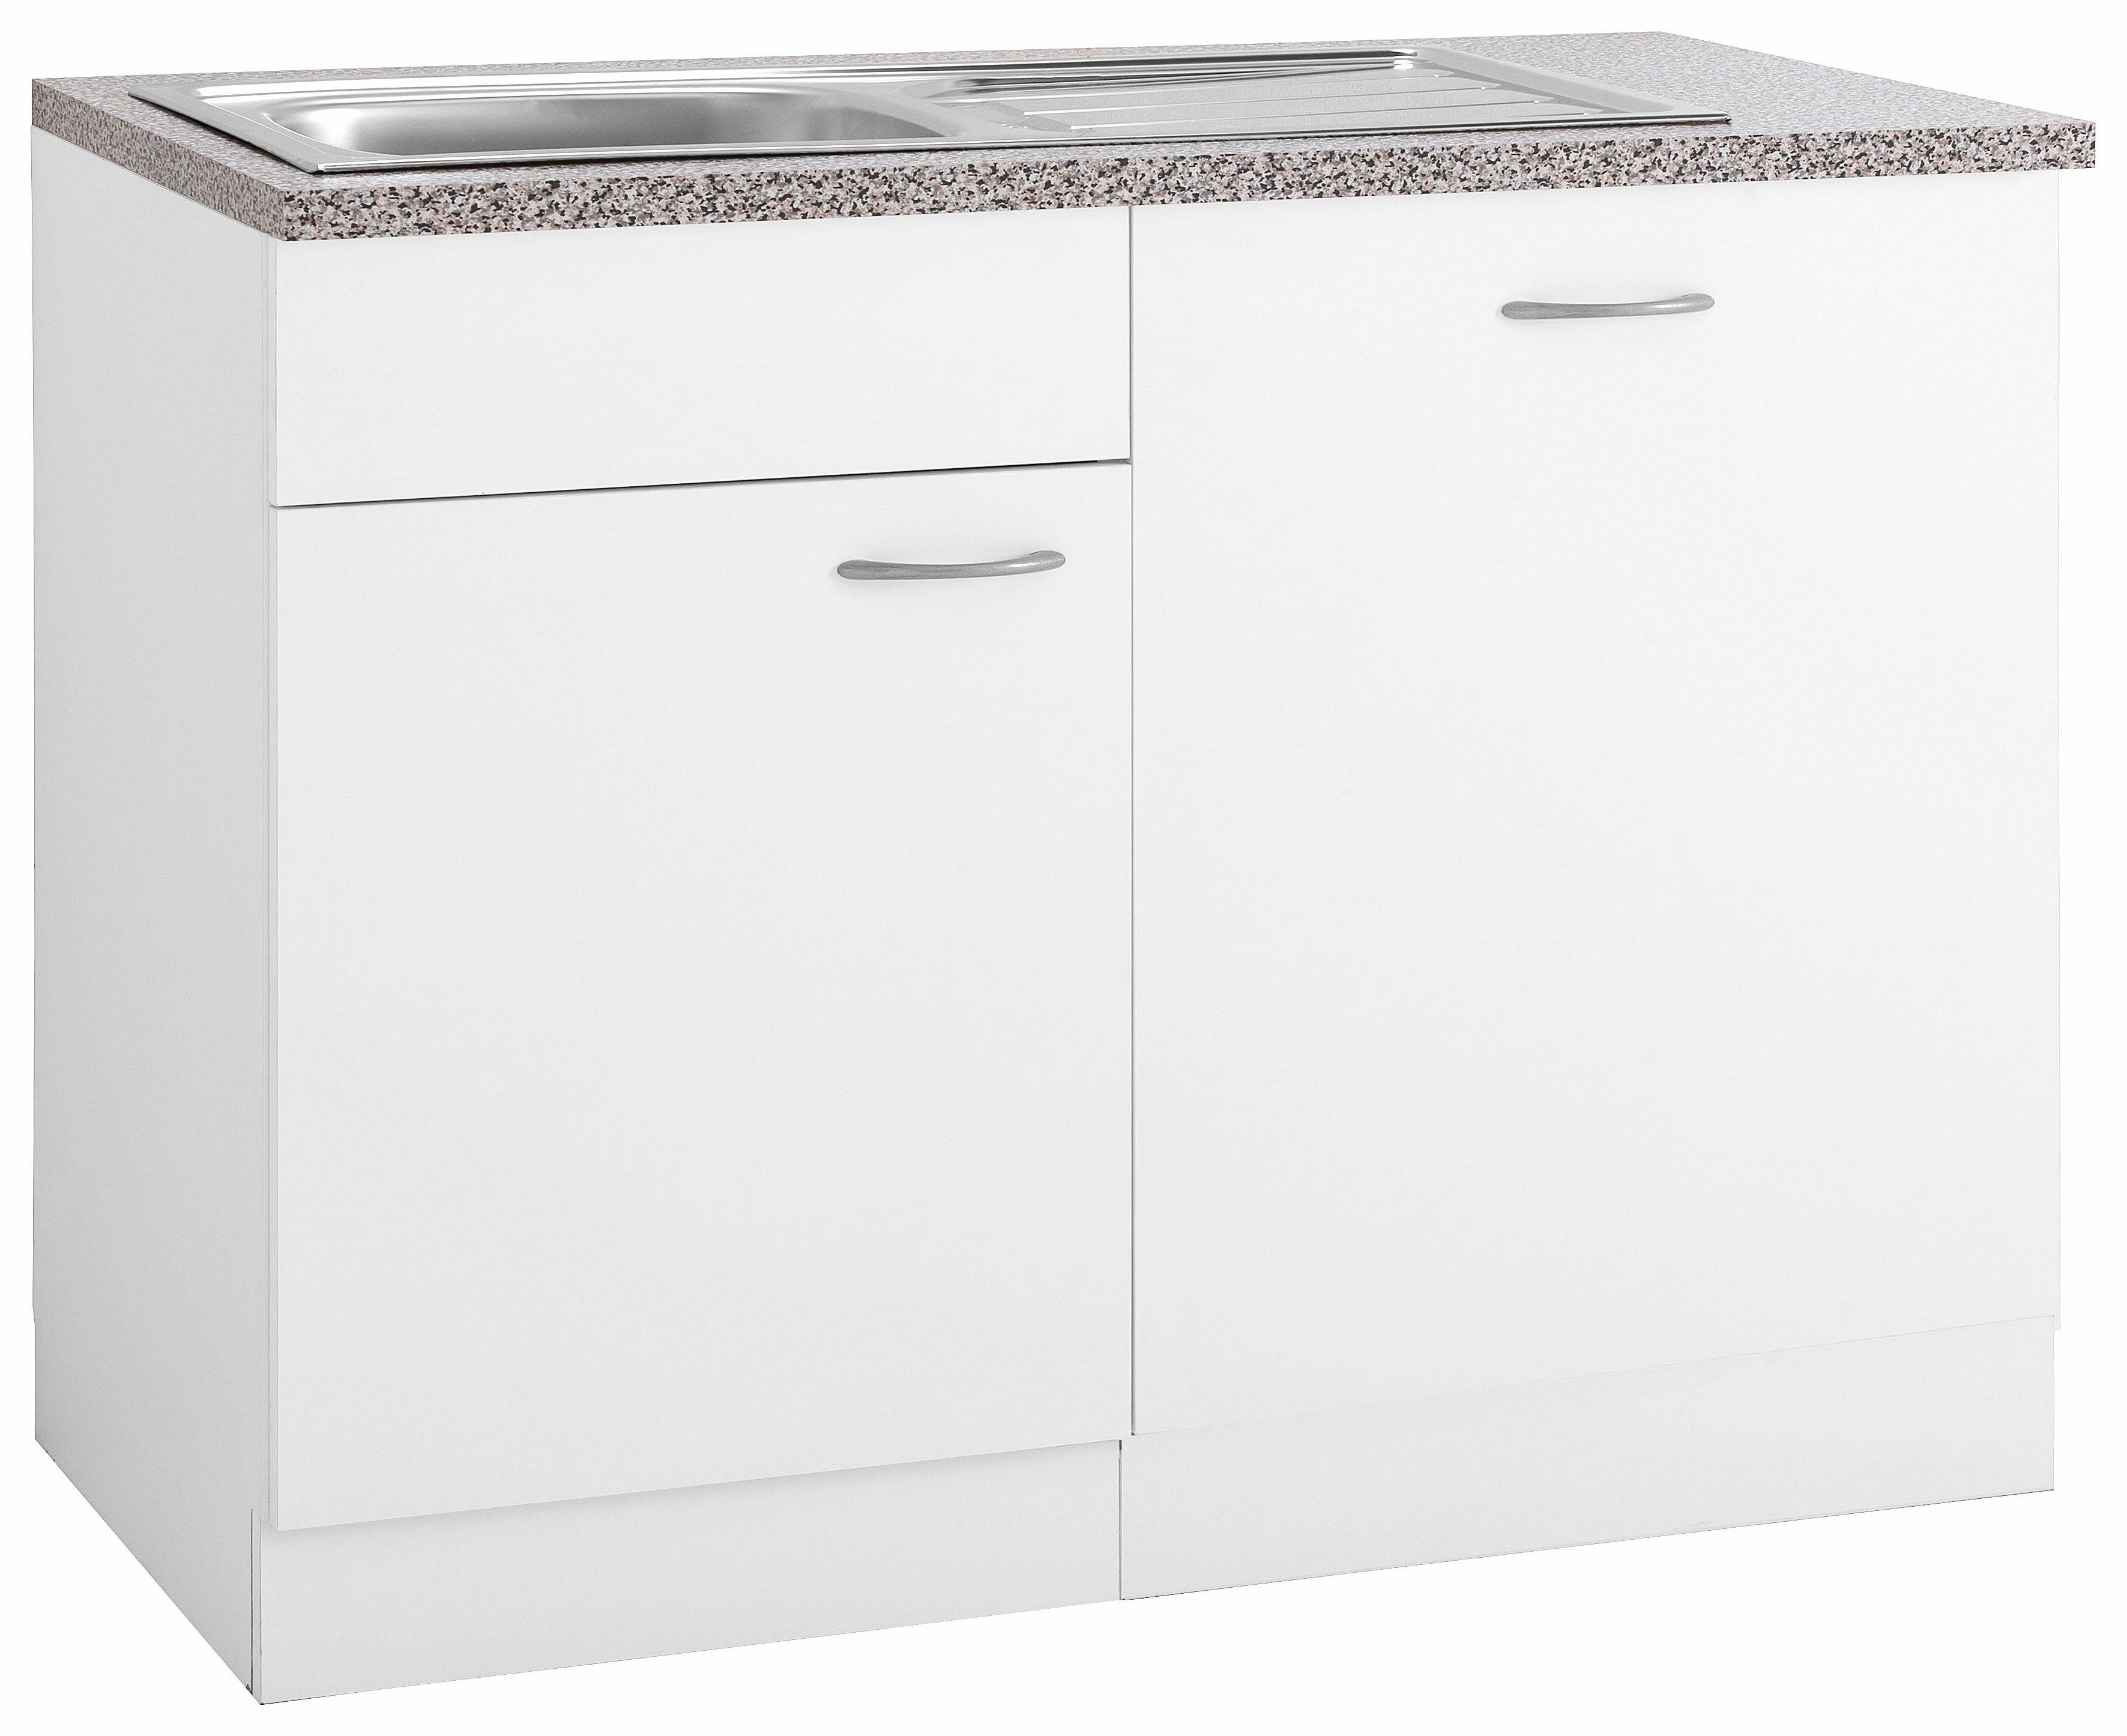 wiho Küchen Spülenschrank Kiel 110 cm breit, inkl. Tür/Griff/Sockel für Geschirrspüler Weiß | Weiß